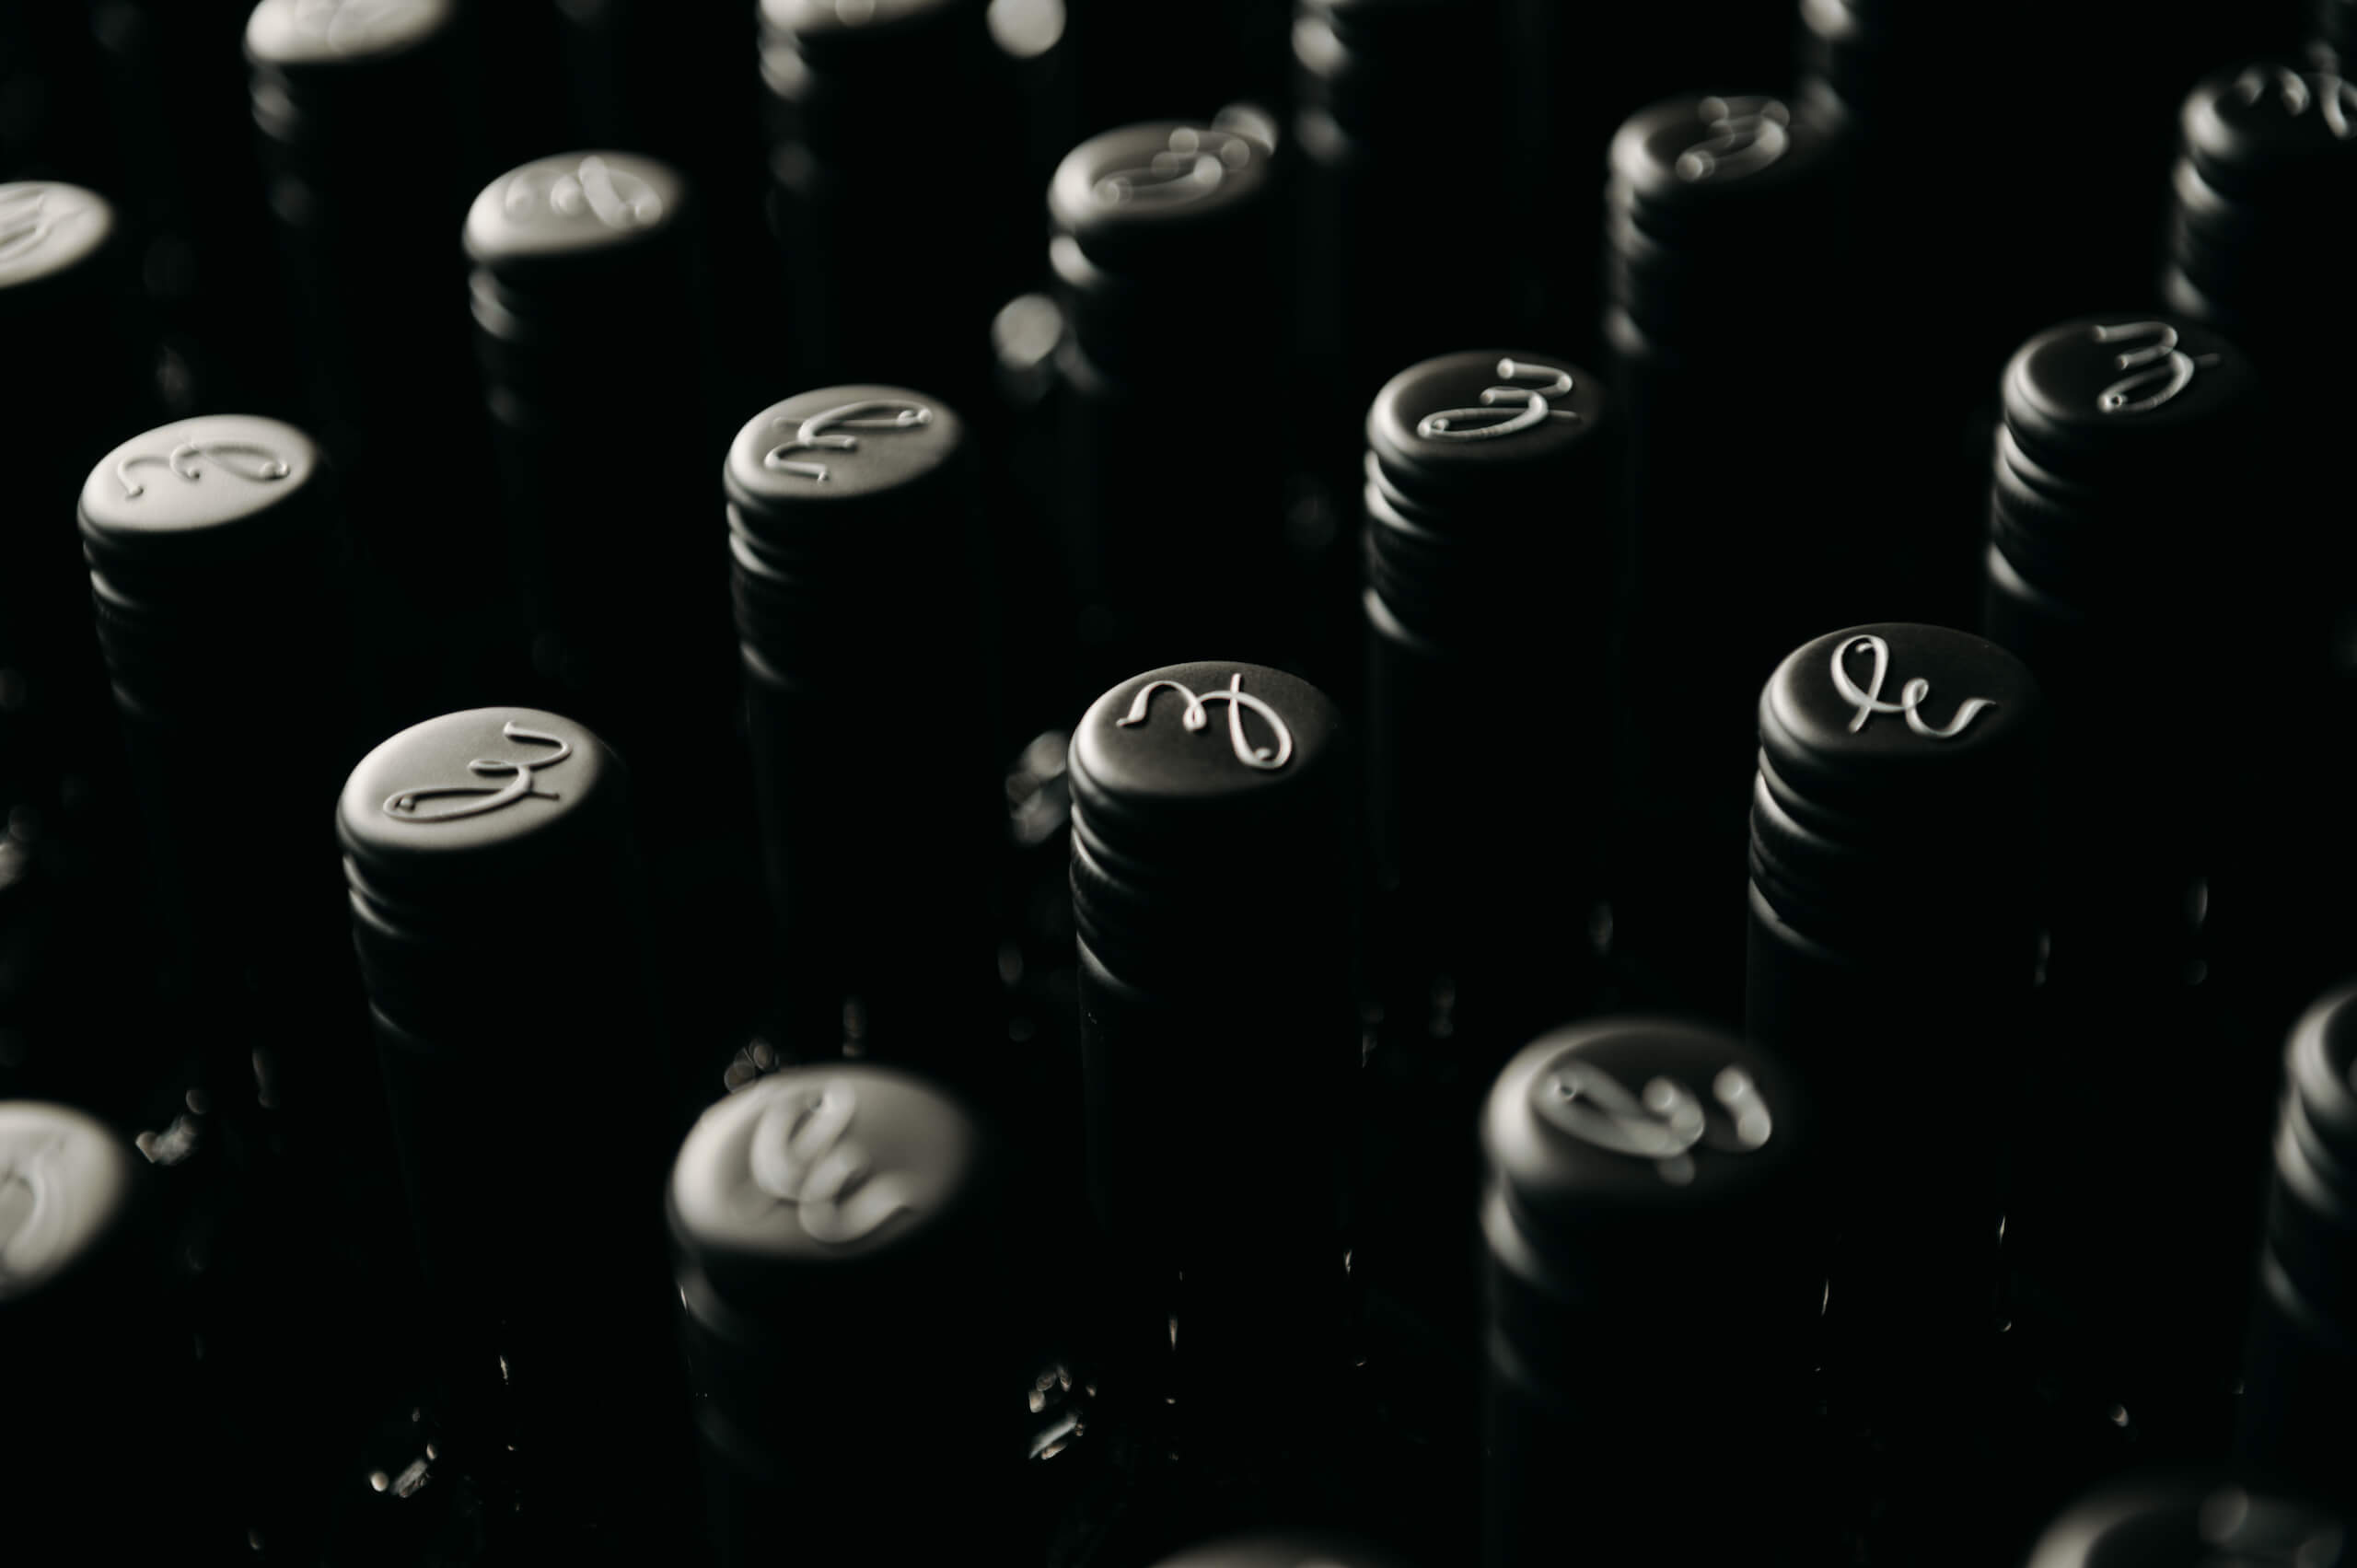 Schwarze Weinkapseln in einer Reihe mit einem weißen Buchstaben darauf